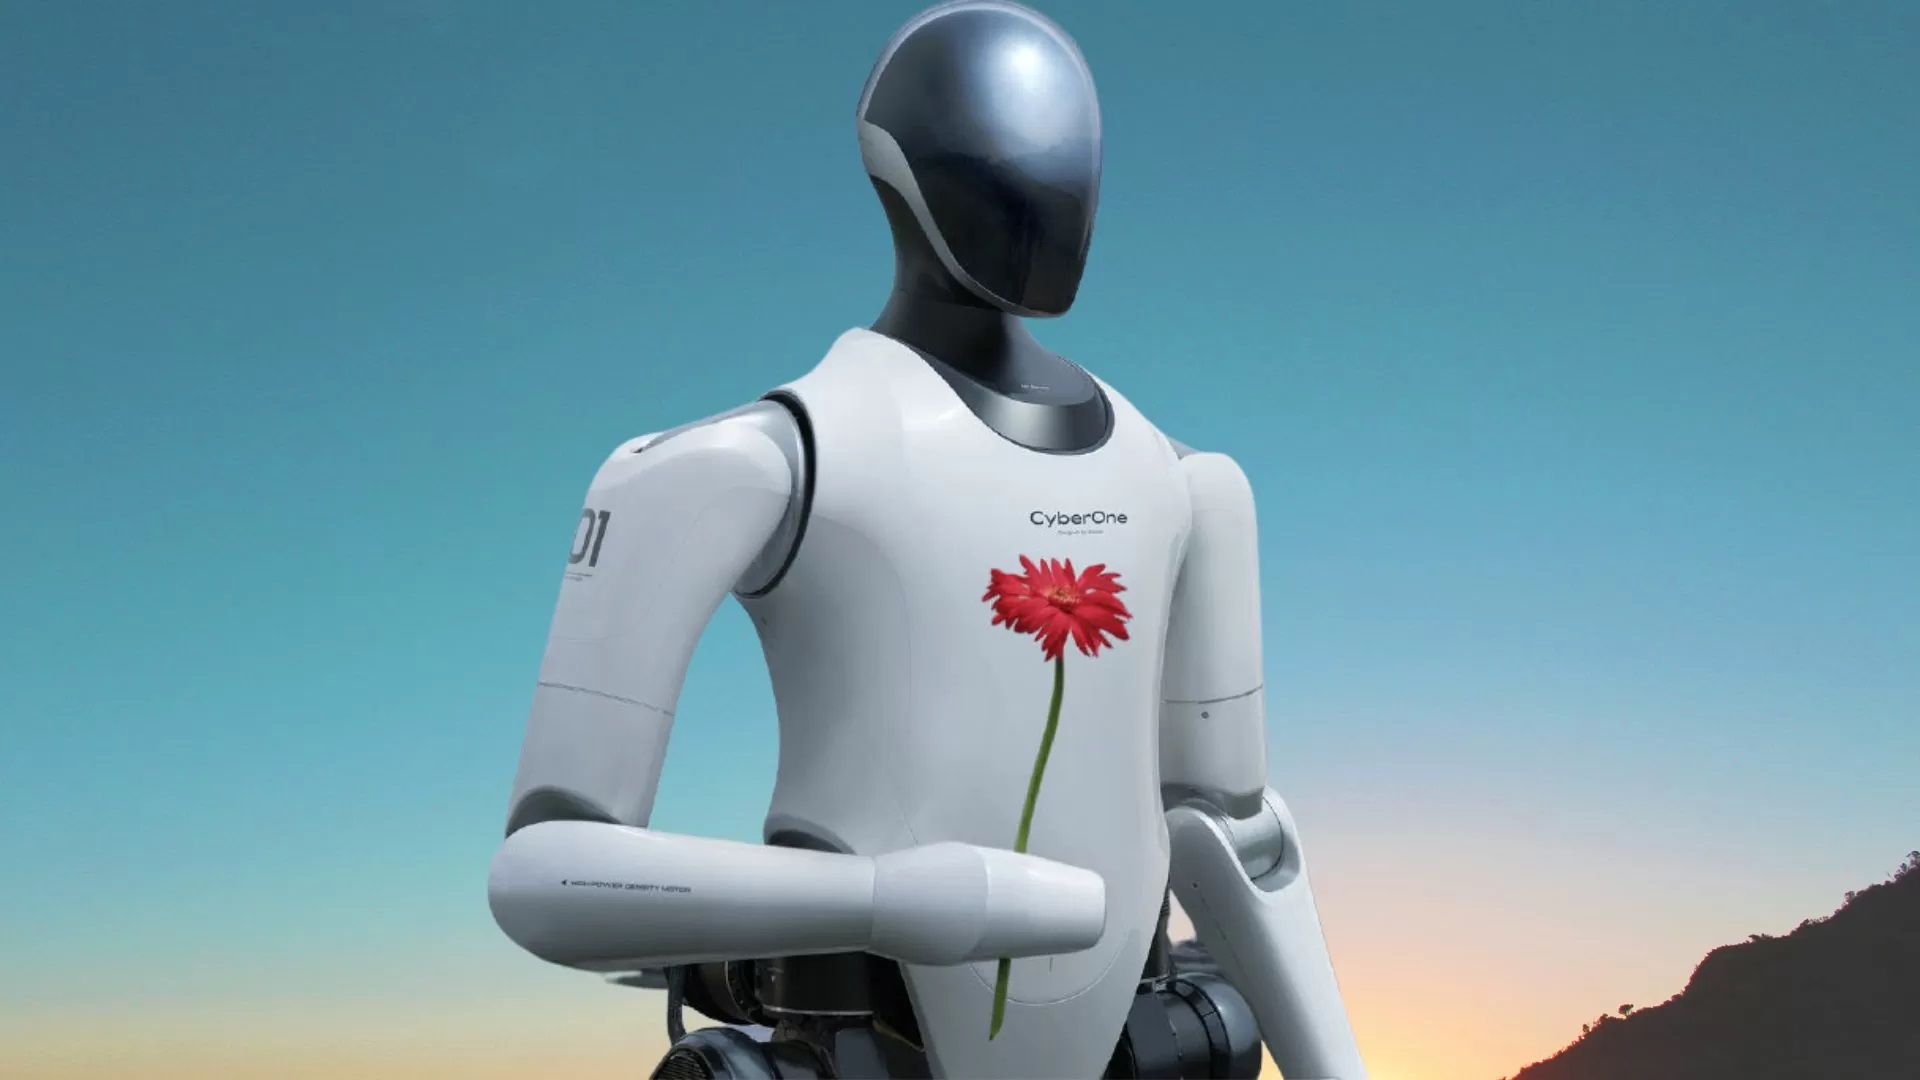 Xiaomi presenta el robot humanoide CyberOne: puede comunicarse, reconocer emociones y dar flores